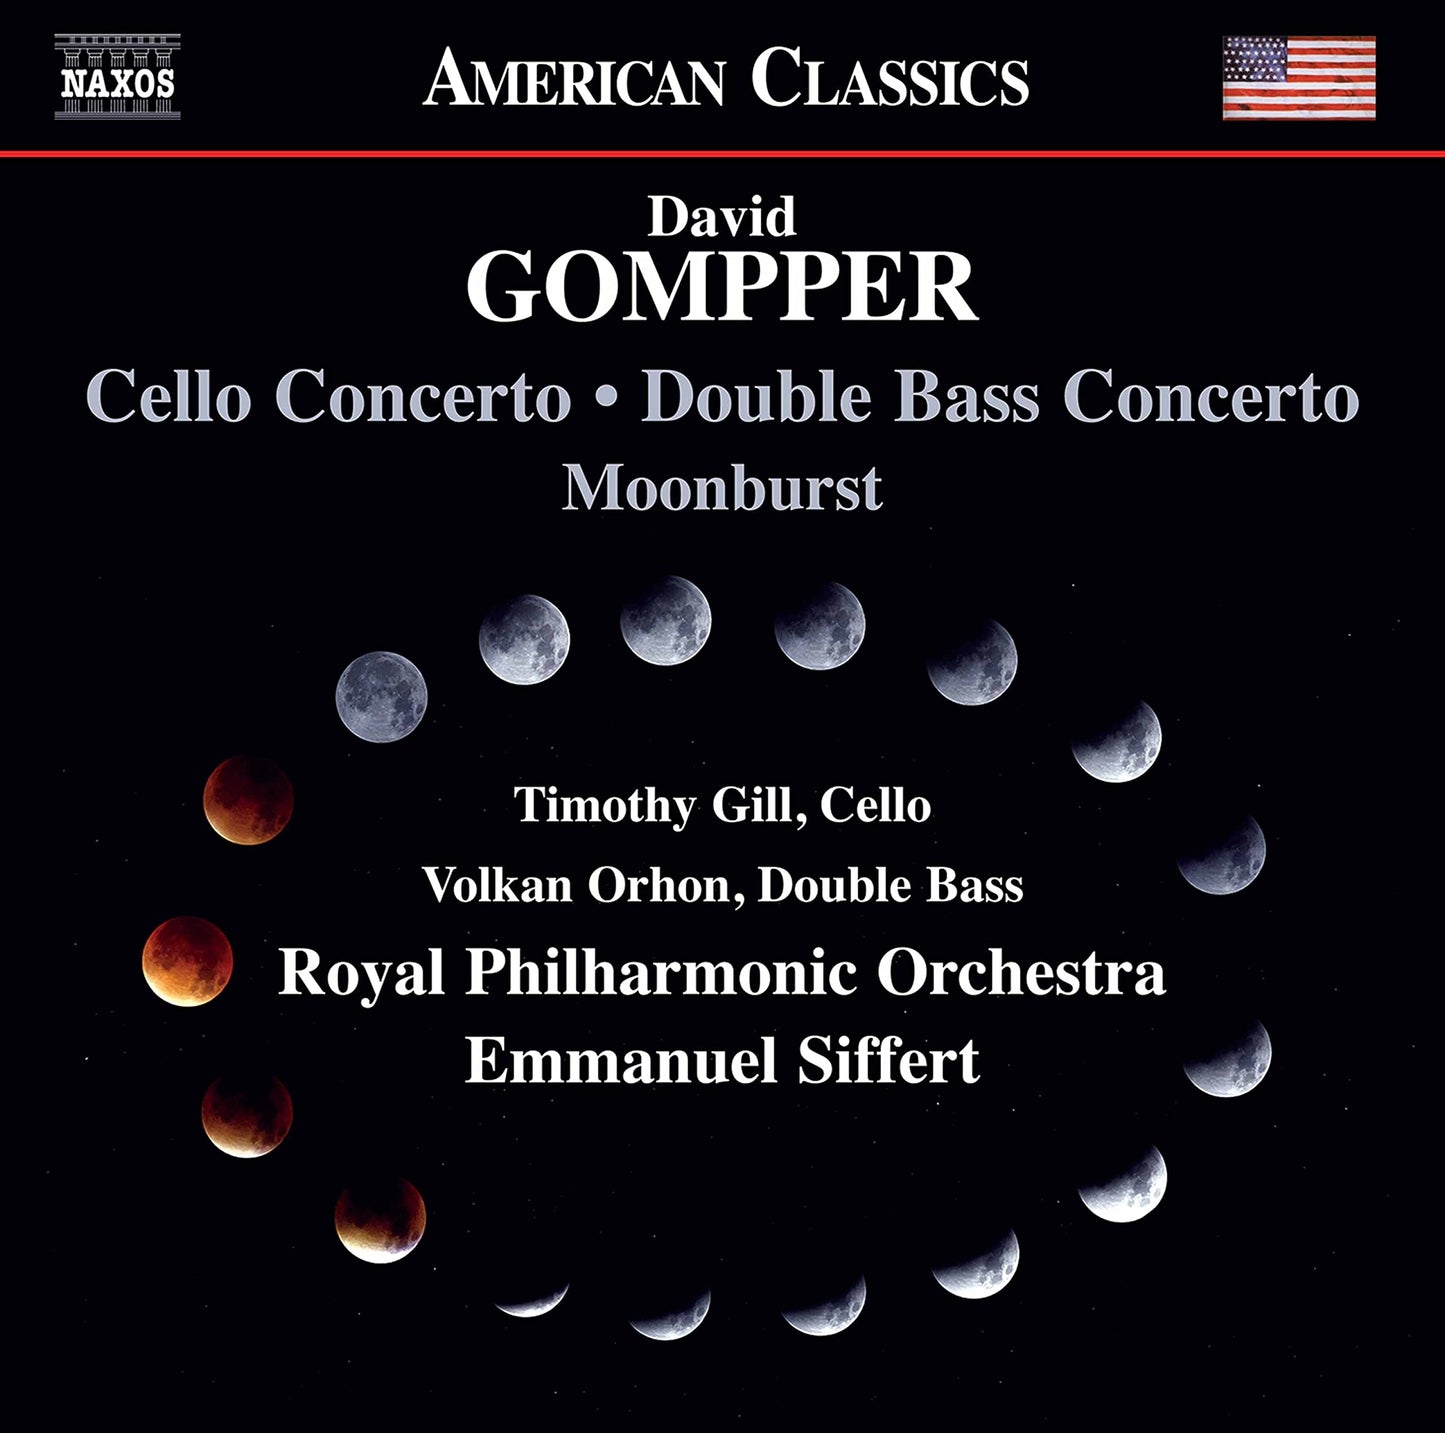 Gompper: Cello Concerto - Double Bass Concerto - Moonburst